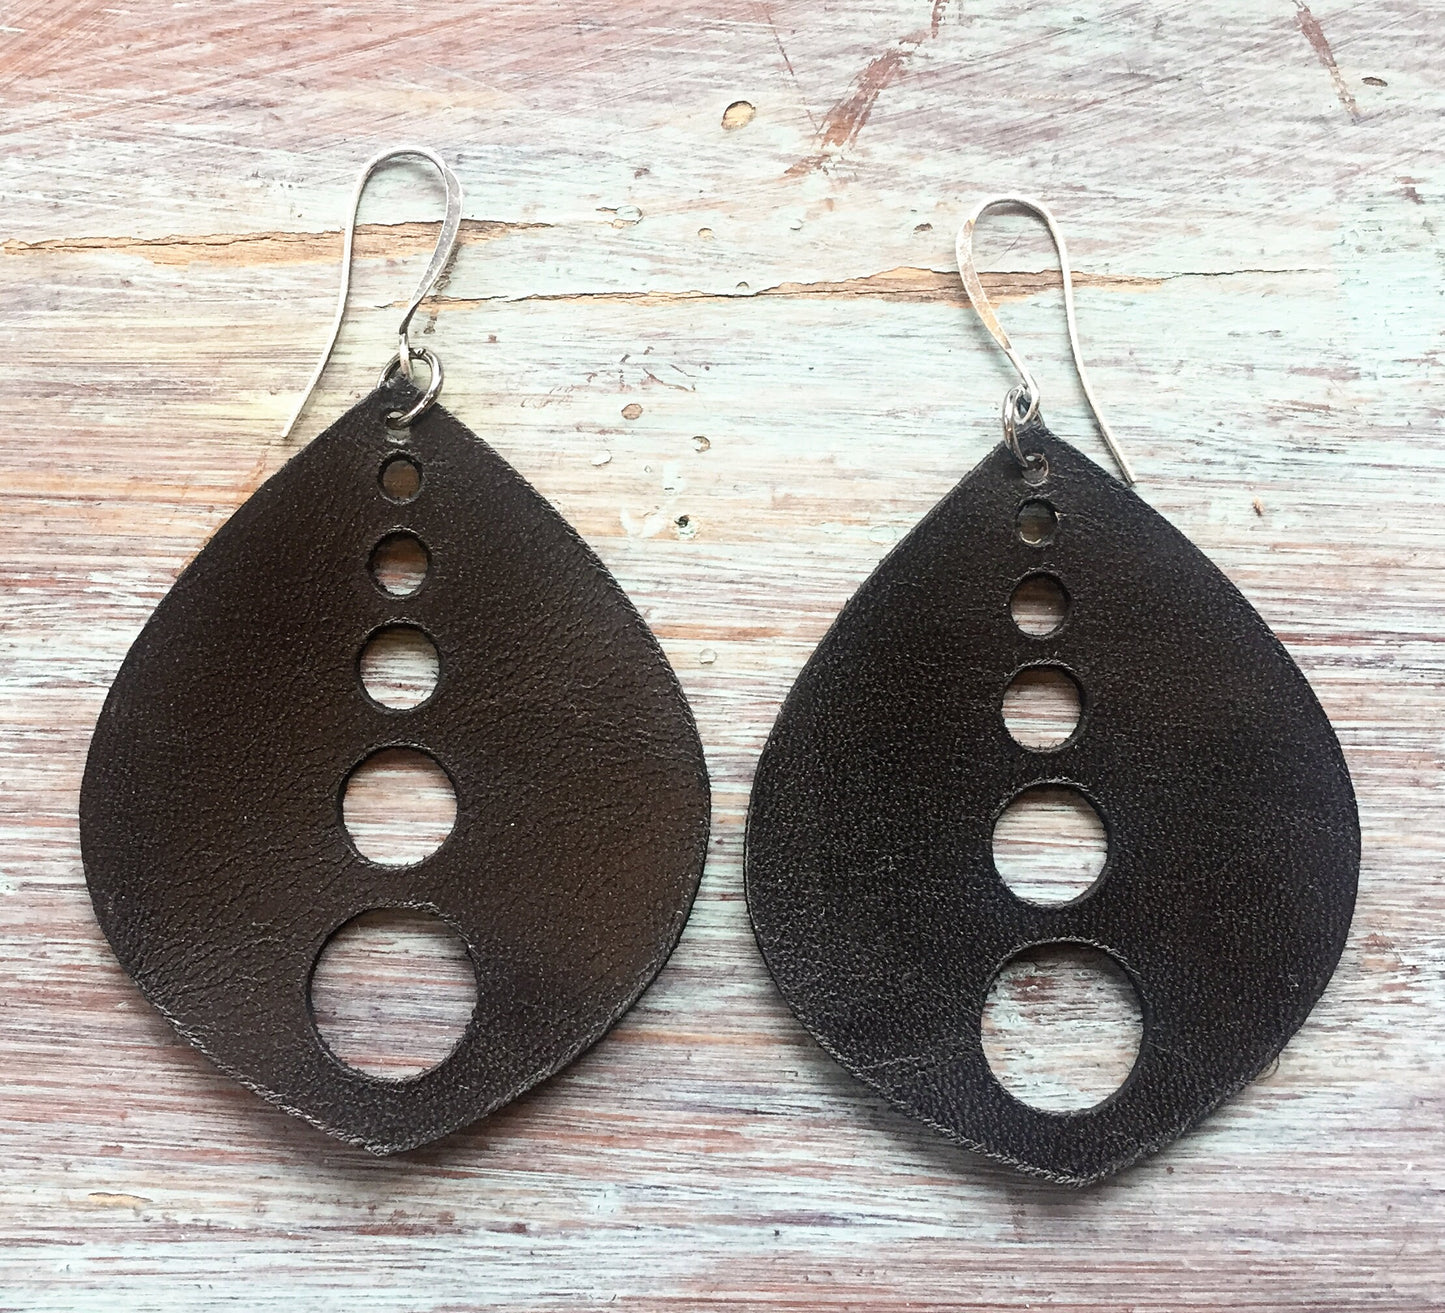 Leather Earrings /  Minimalist Earrings - Dangle Earrings - Boho Chic Earrings